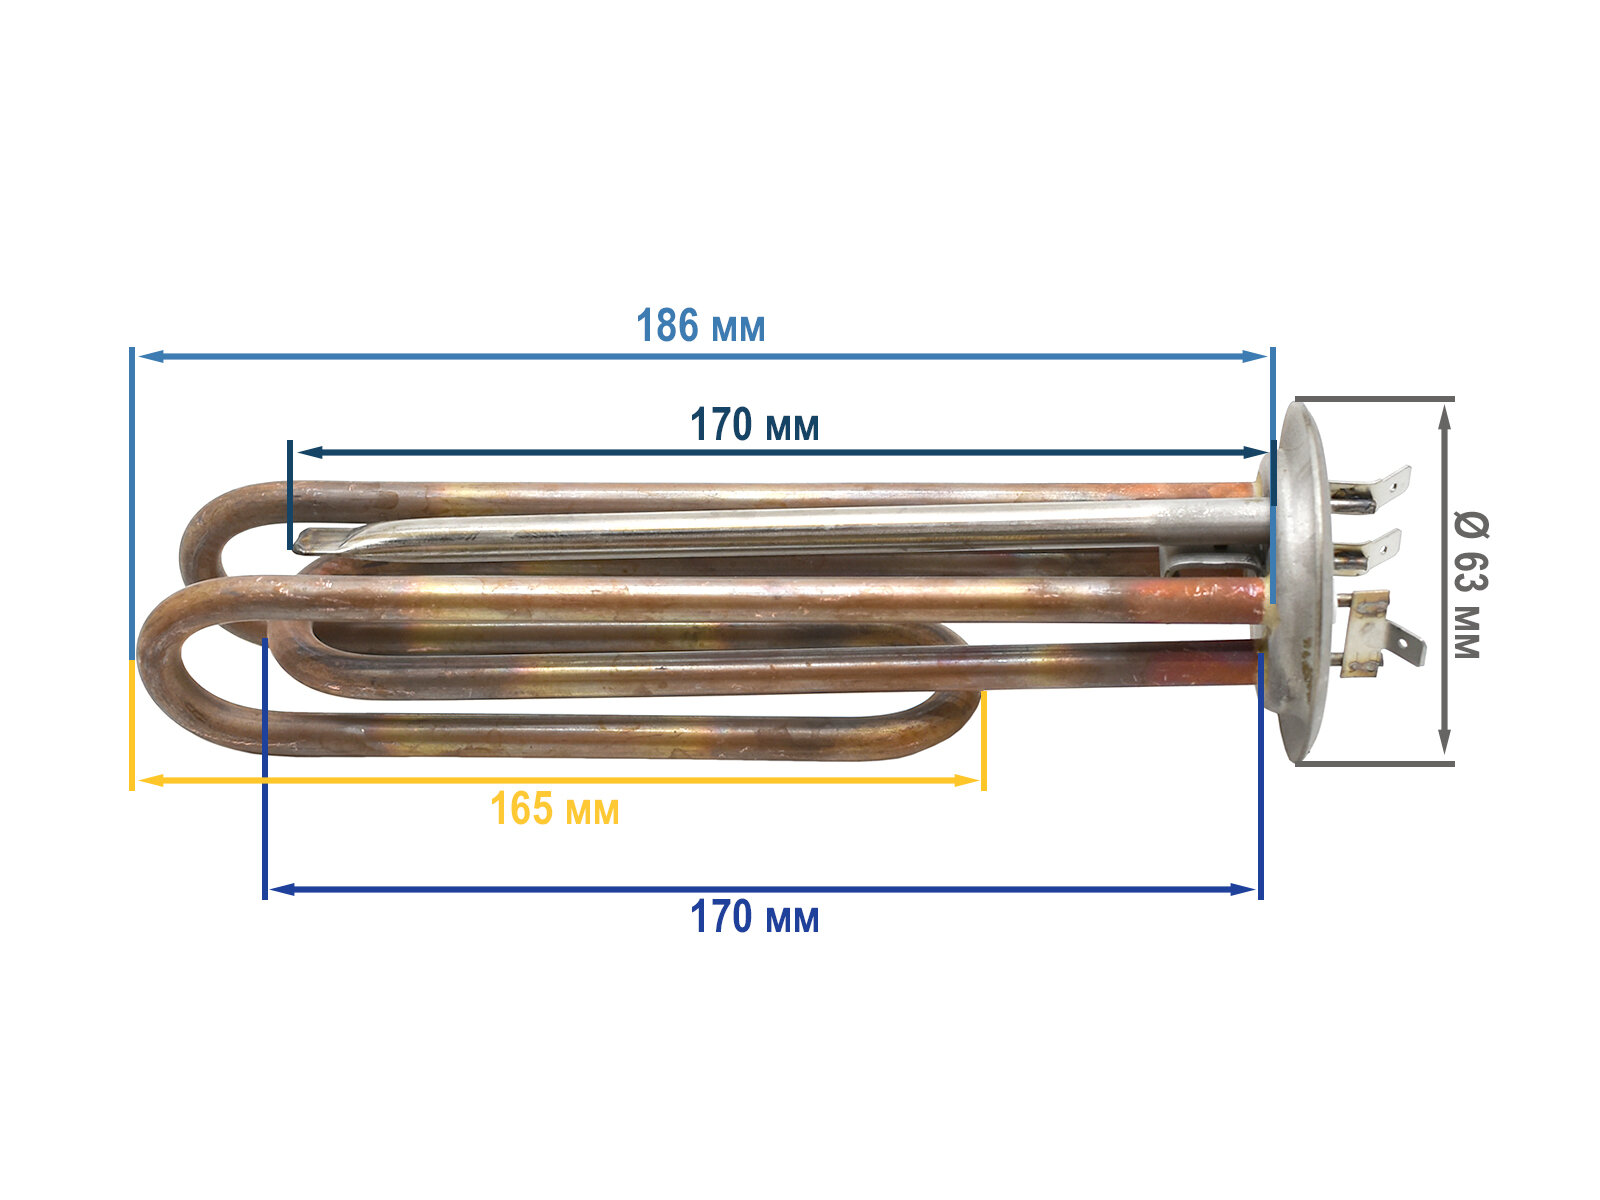 Нагревательный элемент (ТЭН) для водонагревателя RF 2500W (1,5+1,0) D 64 мм, под анод M6